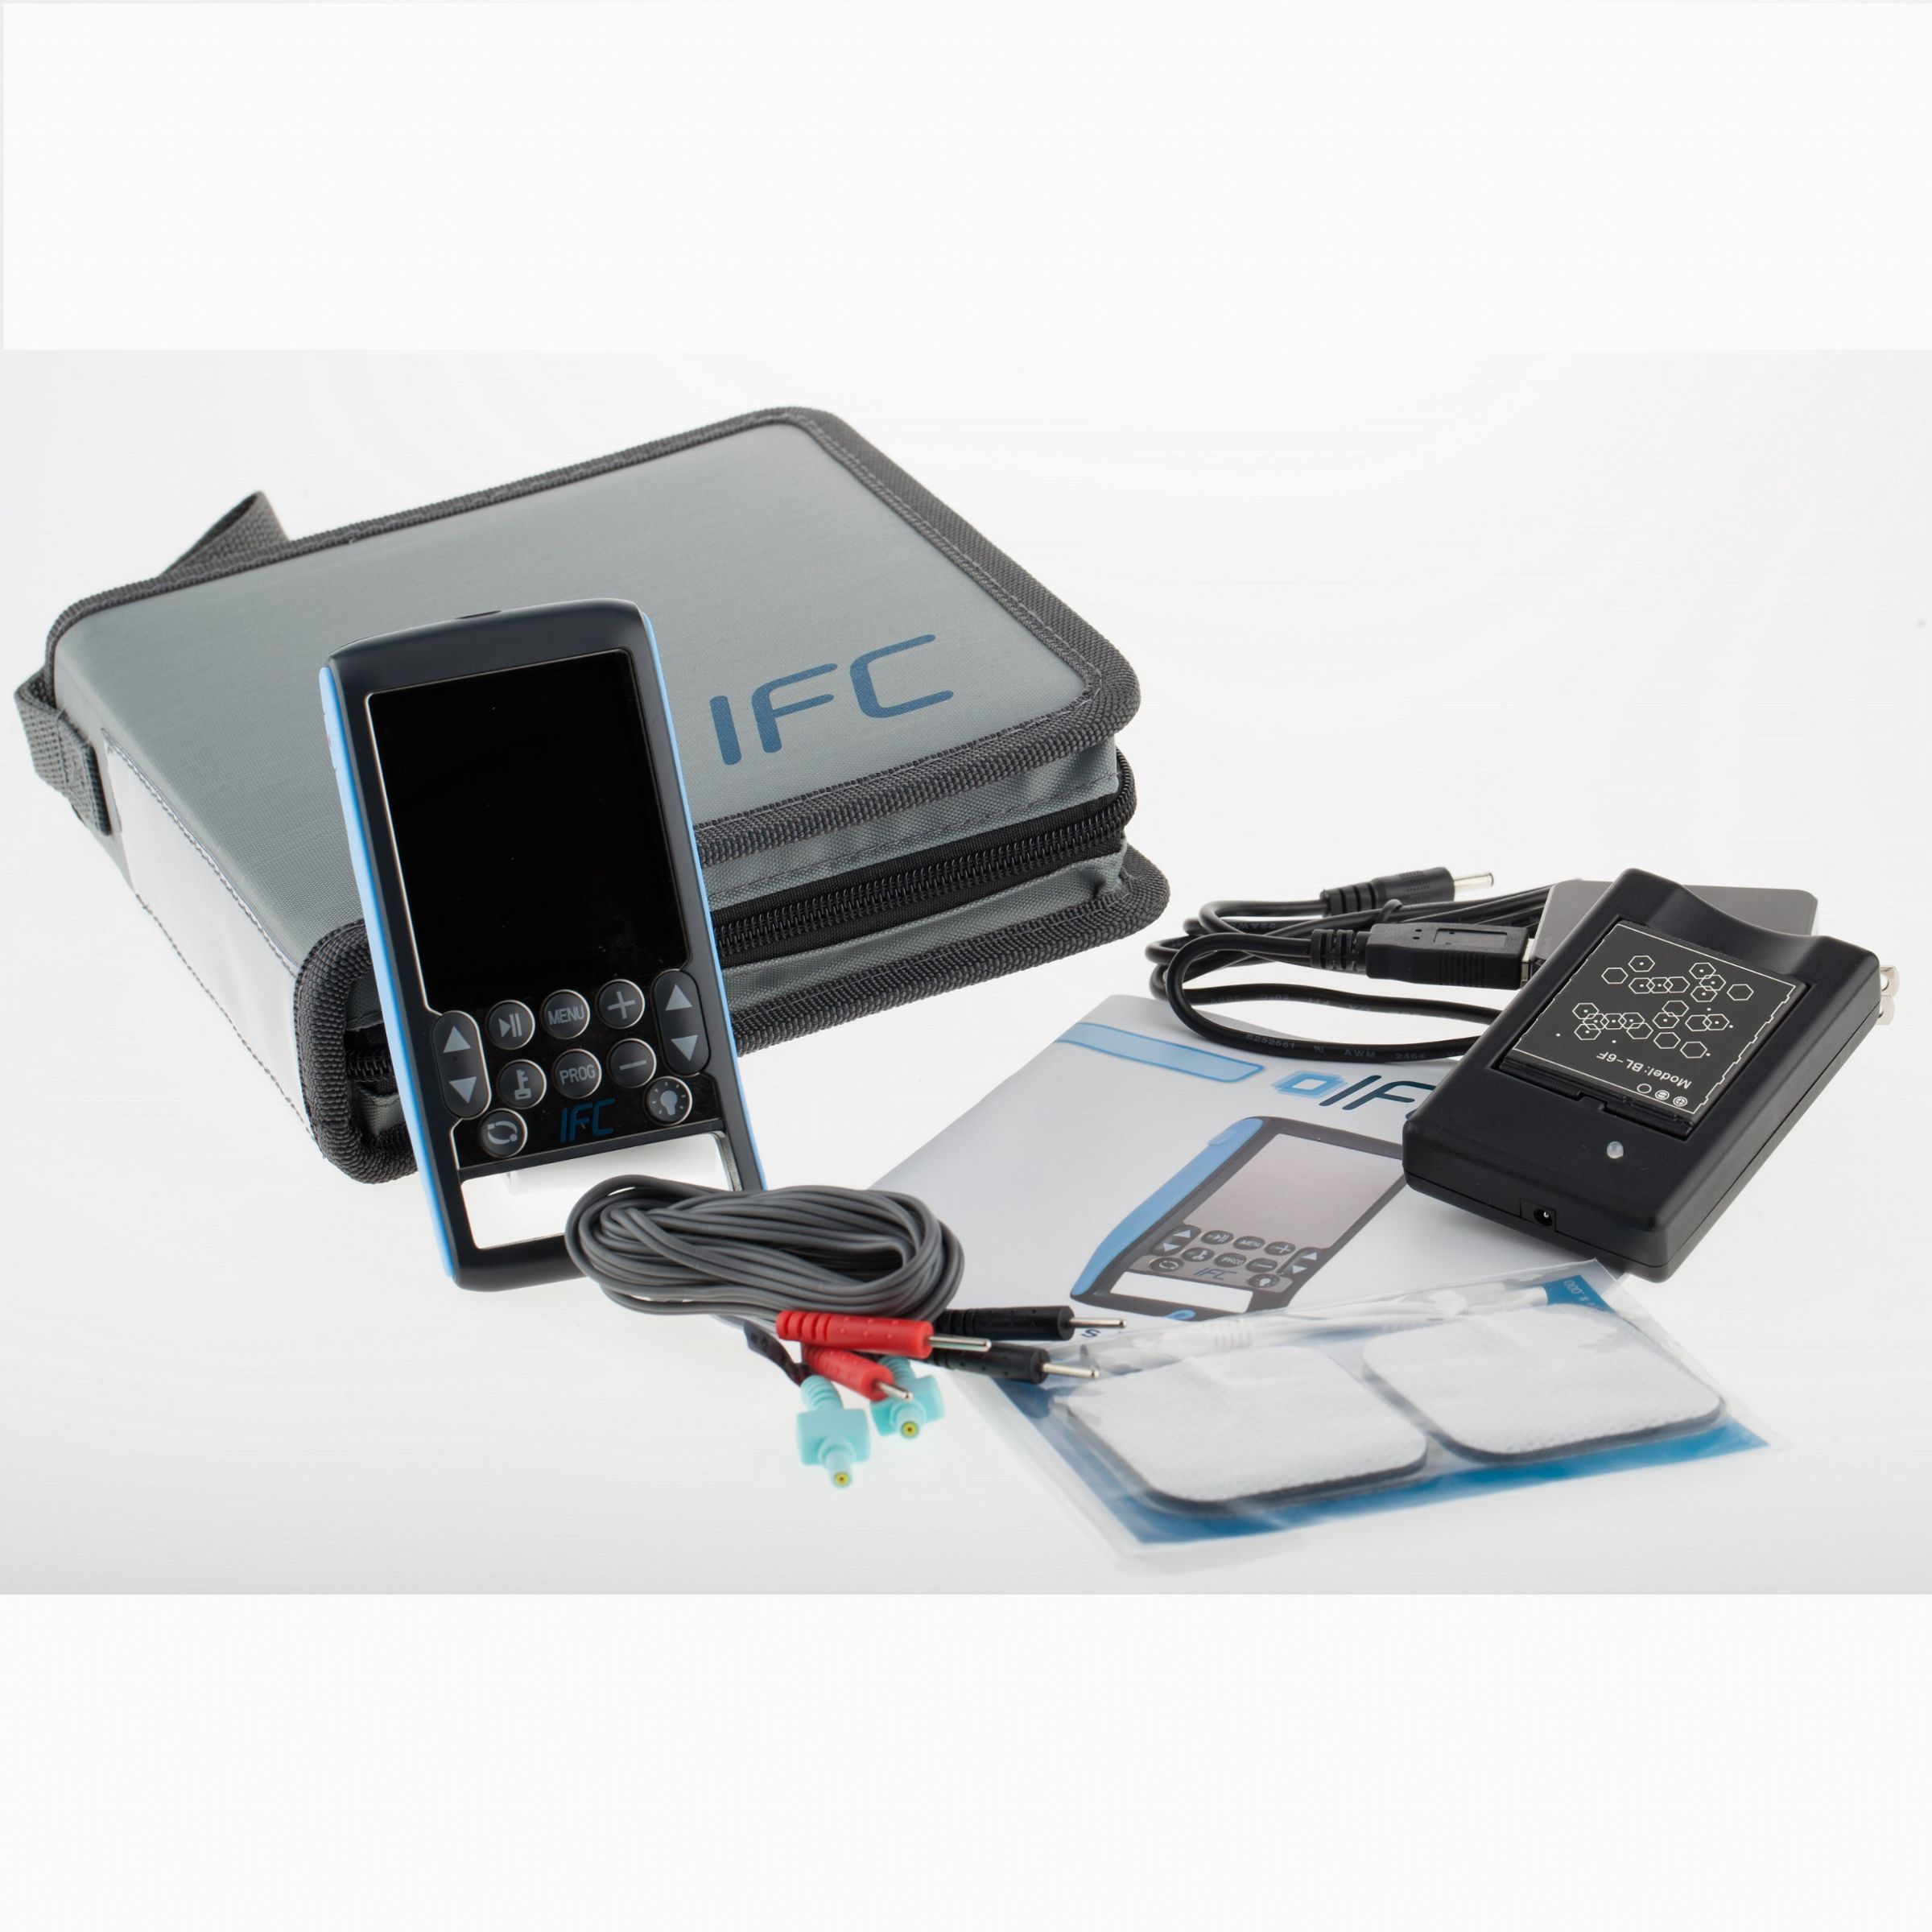 Pain Management Technology Pmt-ifc4000d Medical IFC4000 Digital Interferential Unit